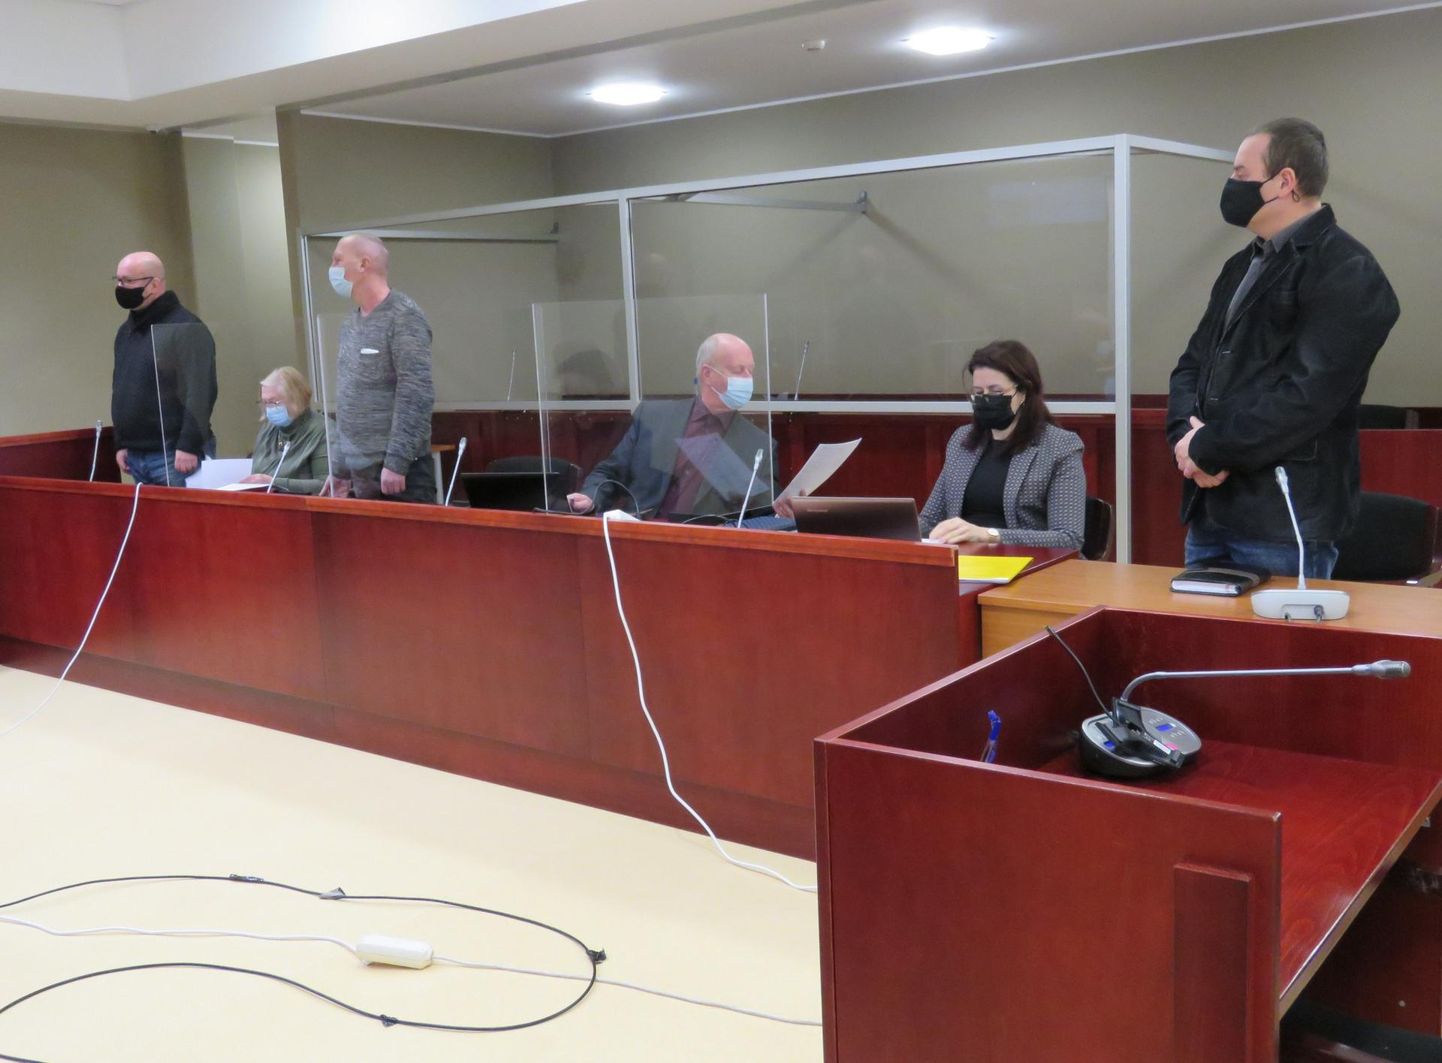 Avaistung Otepää endiste juhtide ja ettevõtja kohtuasjas leidis aset tänavu jaanuaris Tartu kohtumajas.